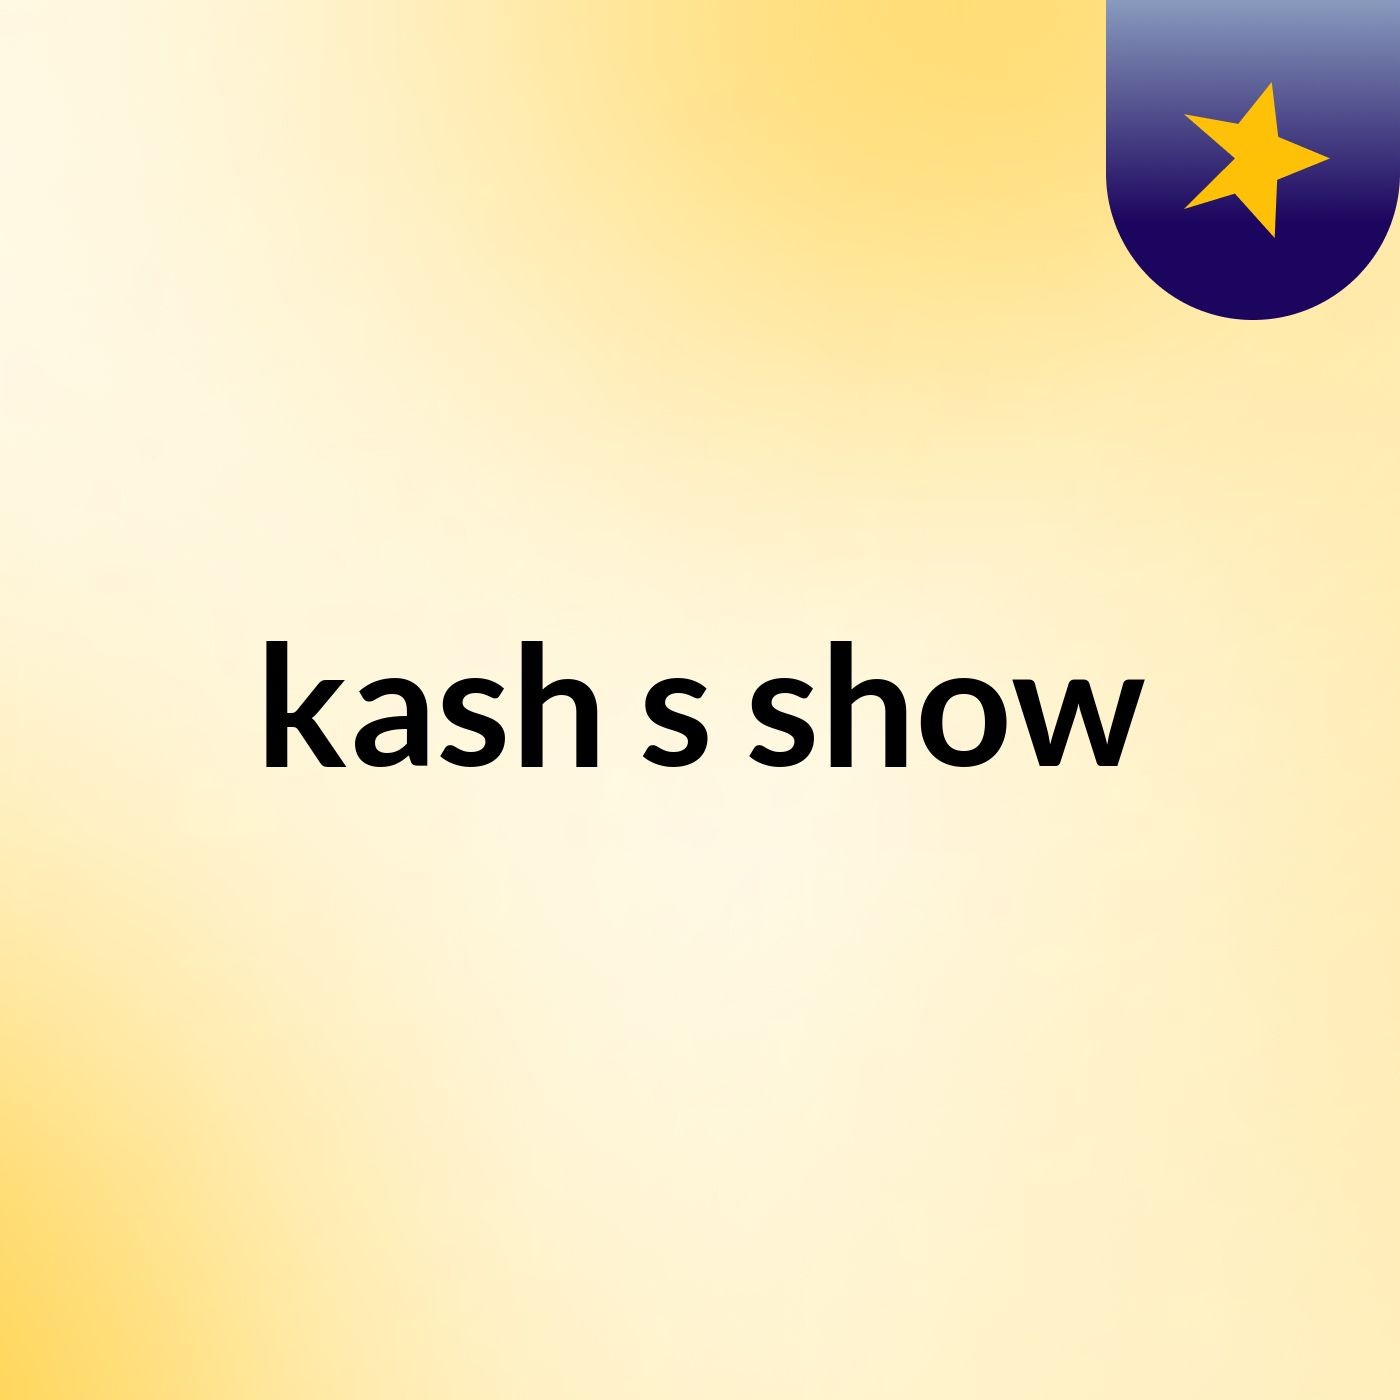 kash's show